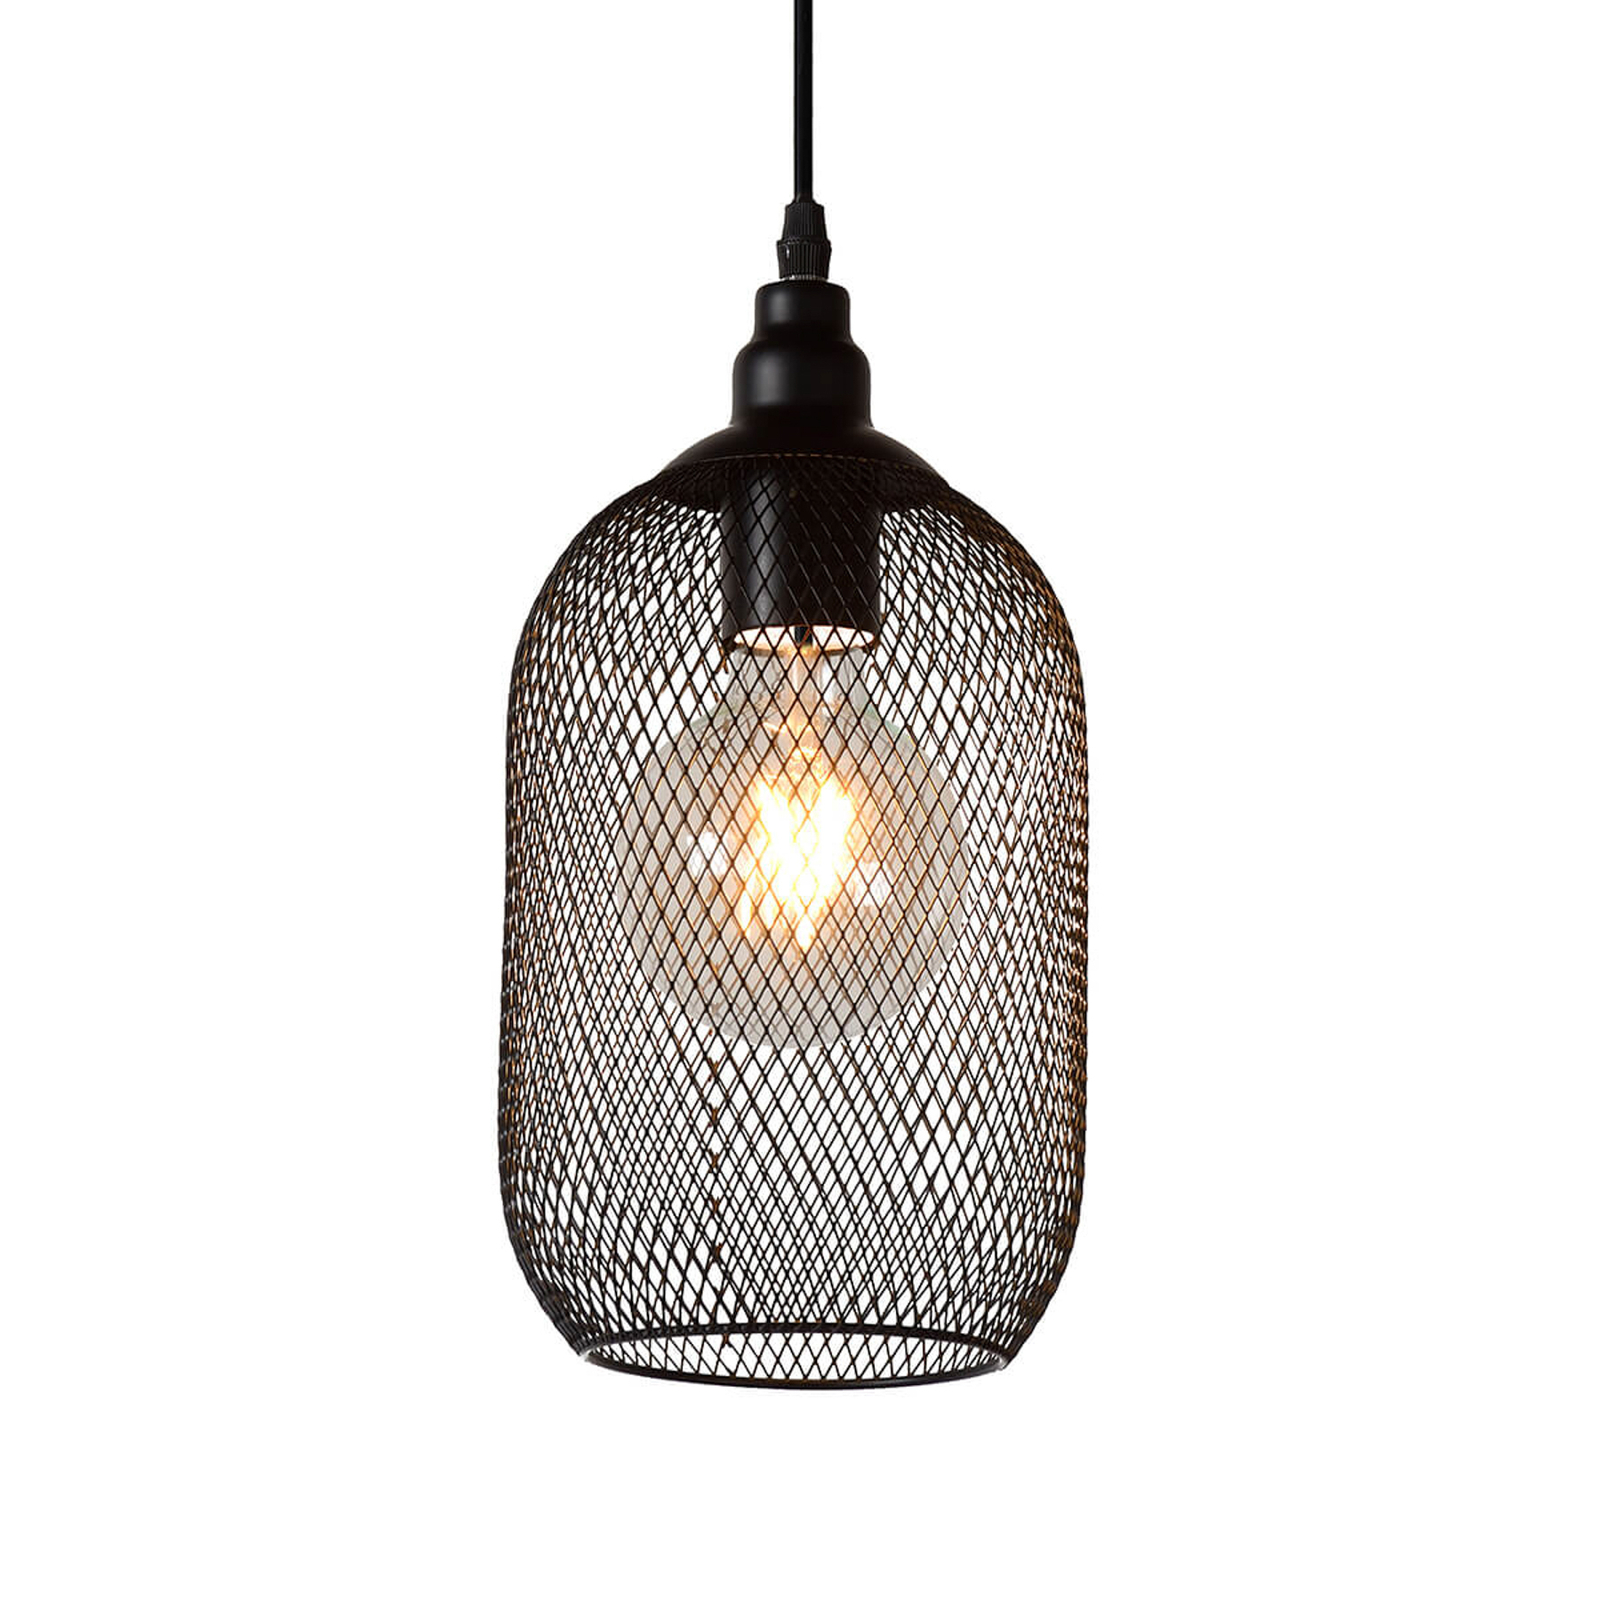 Mesh pendant light, 1-bulb, black, Ø 15 cm